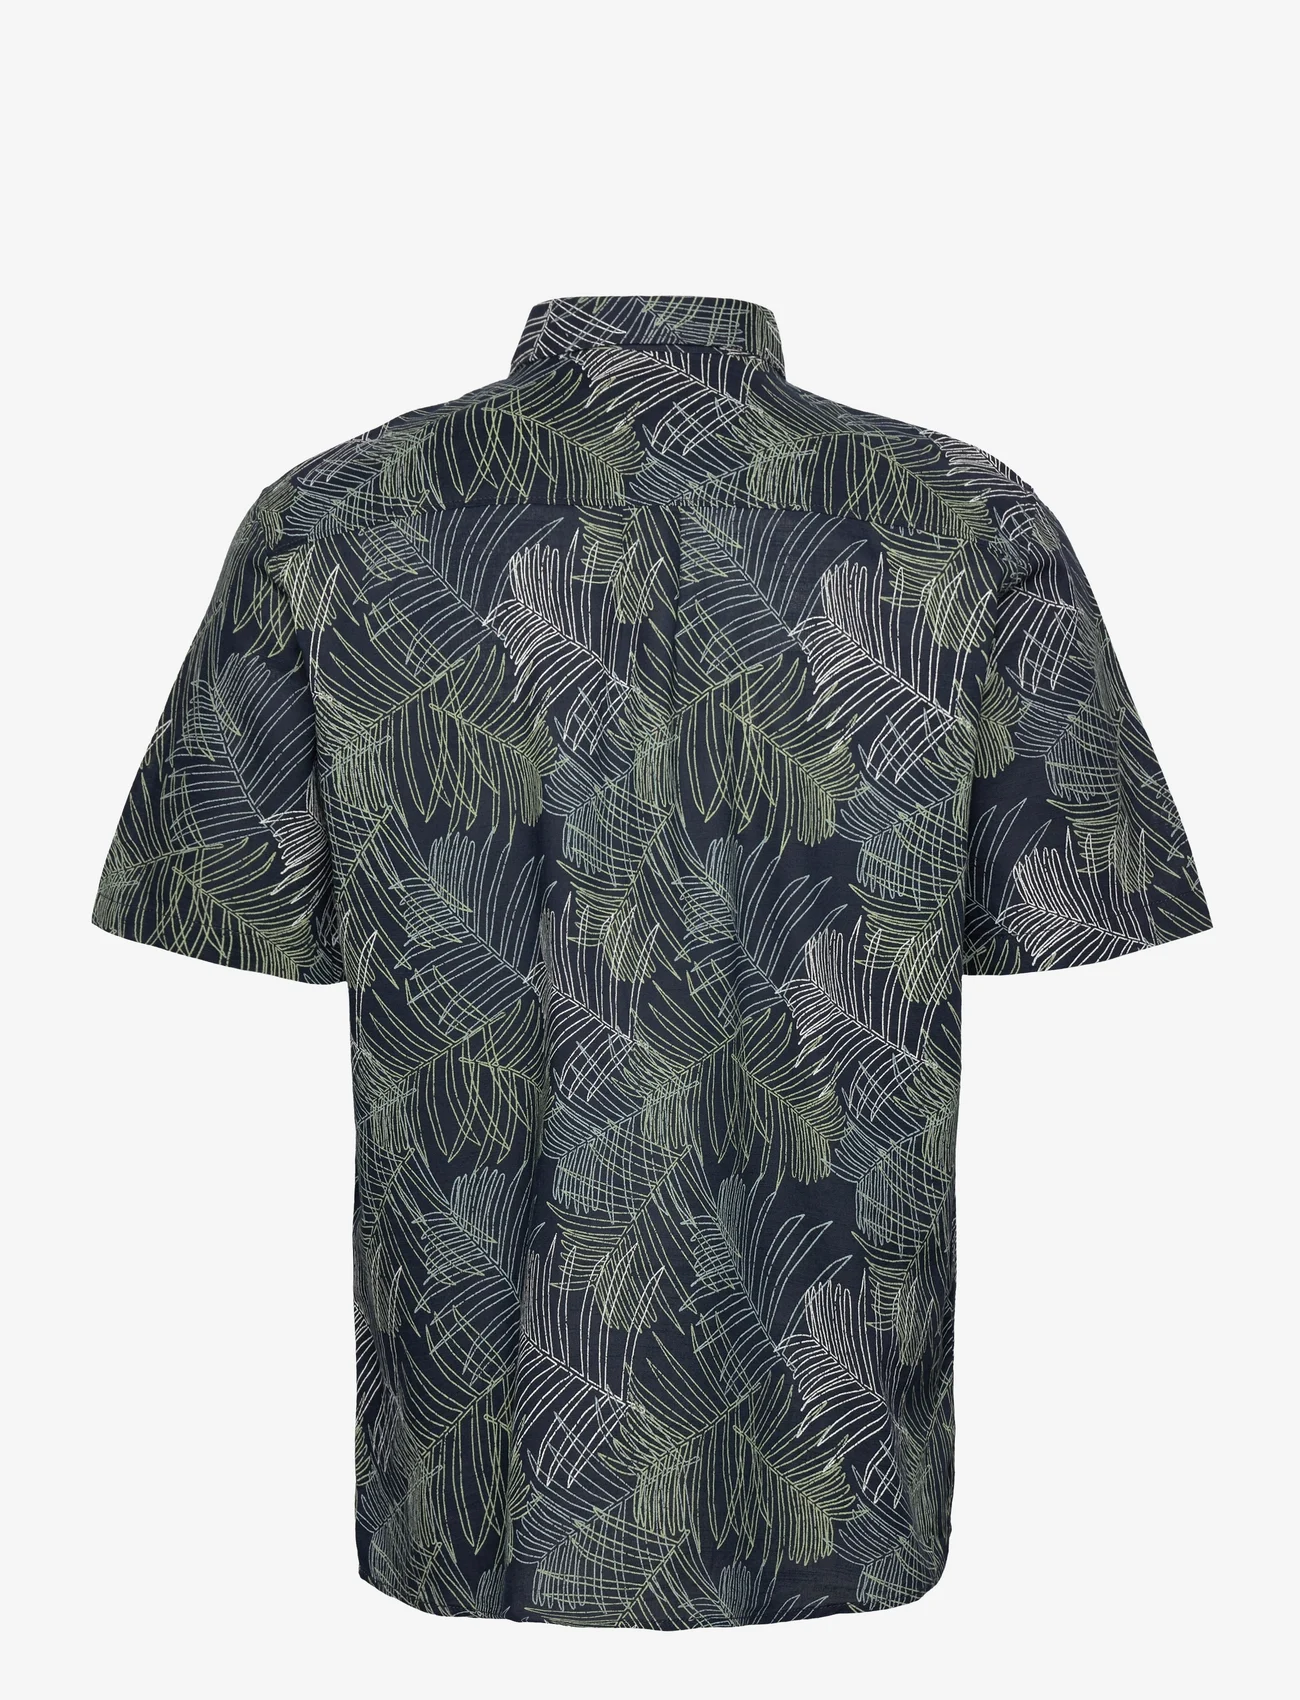 Tom Tailor - comfort printed shirt - short-sleeved shirts - navy multicolor leaf design - 1